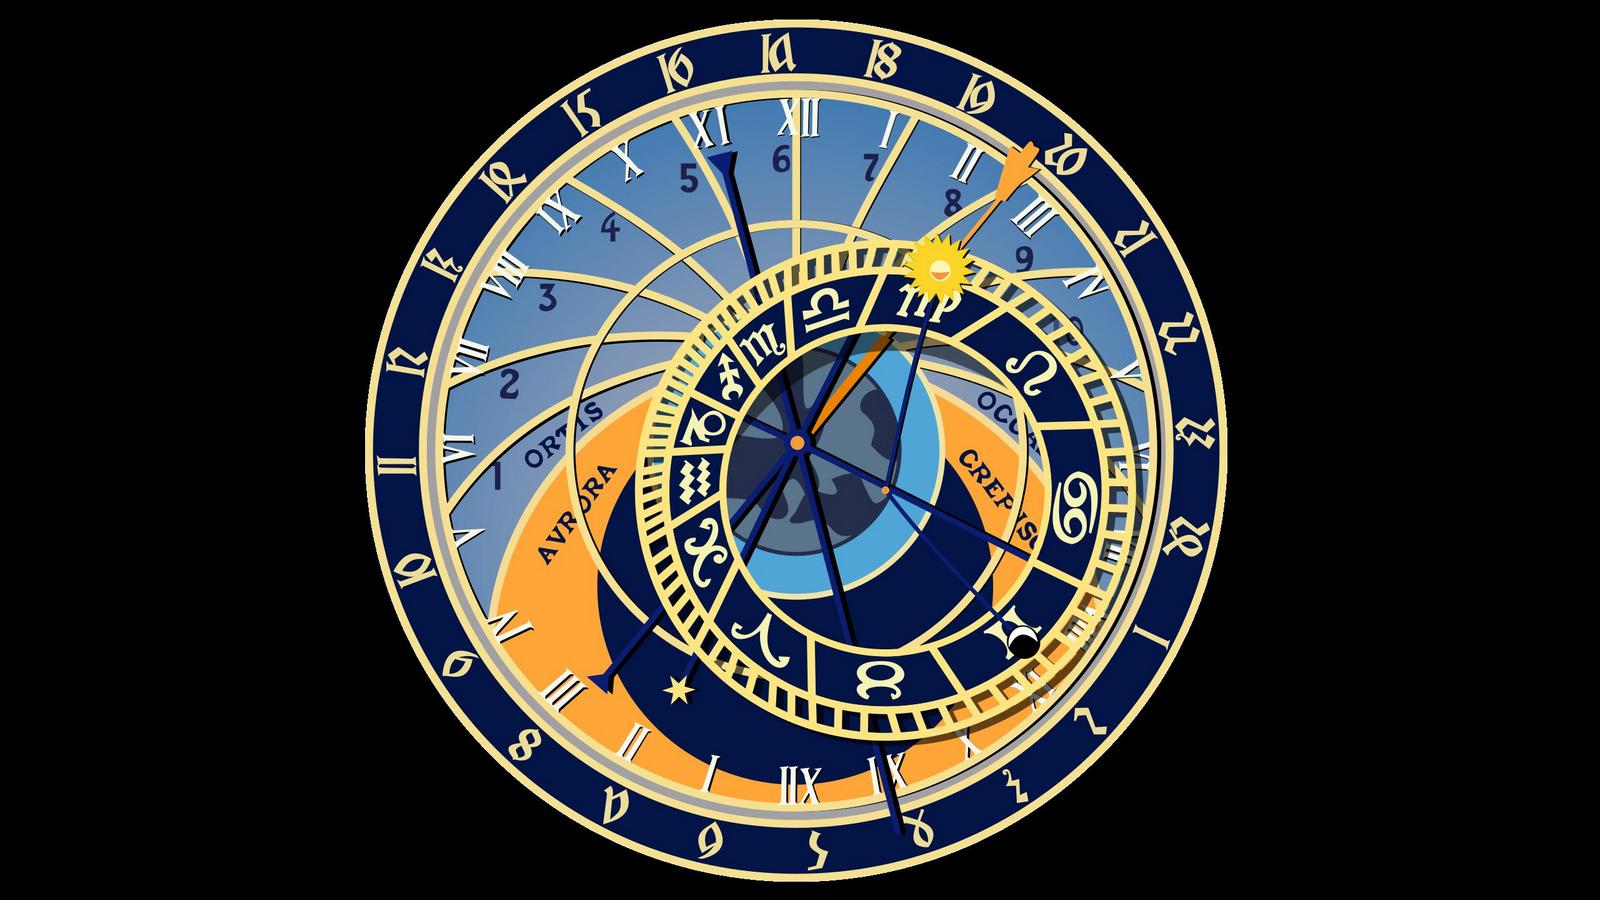 Tapeta na plochu Prask orloj v 1600x900. Obrzek ke staen zdarma